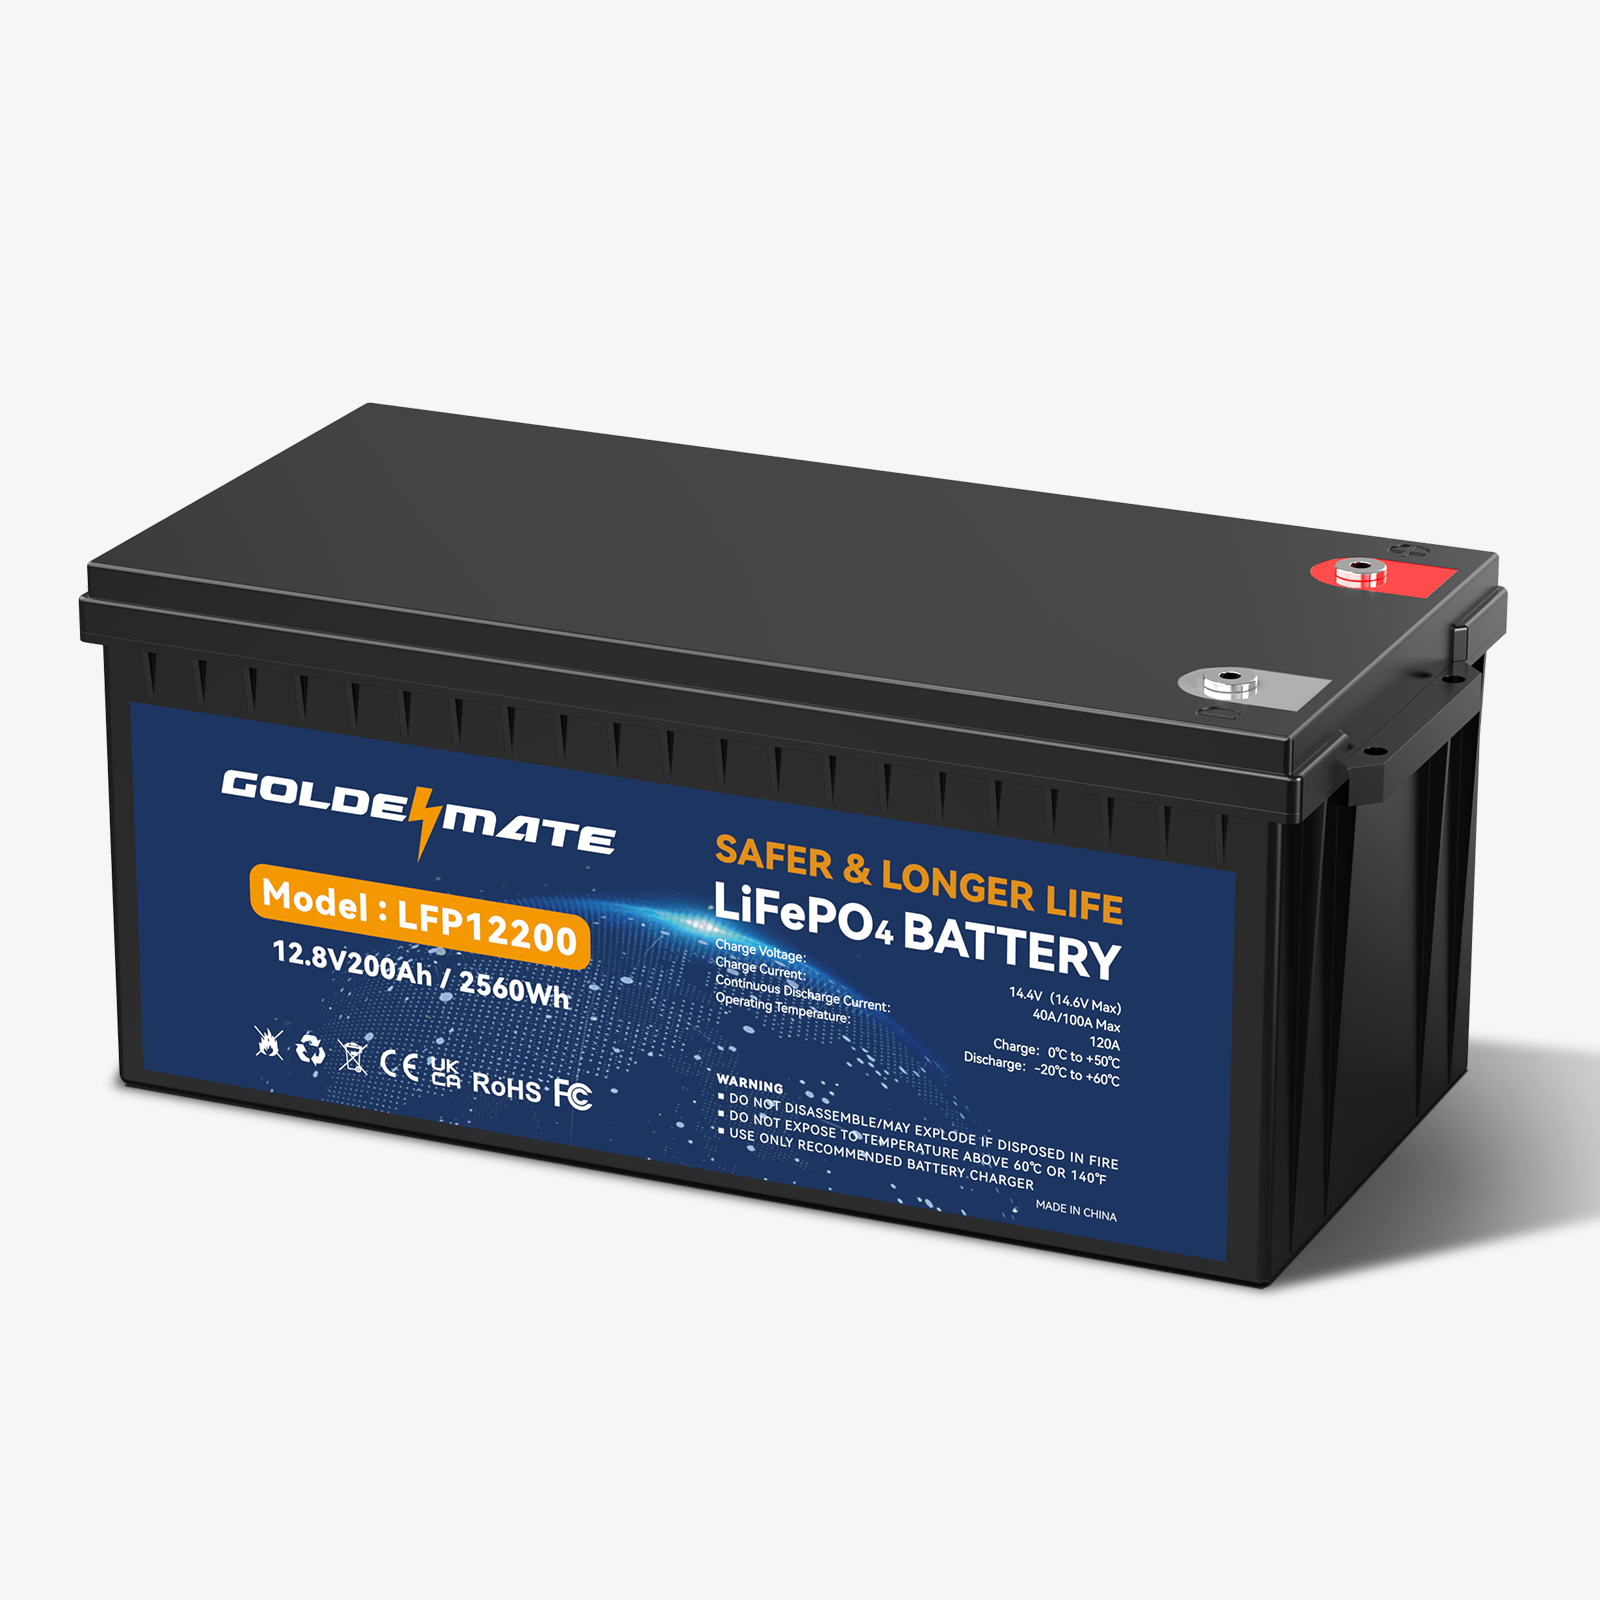 GoldenMate LiFePO4 12V 200Ah Lithium Battery Built-In BMS, 1 Pack